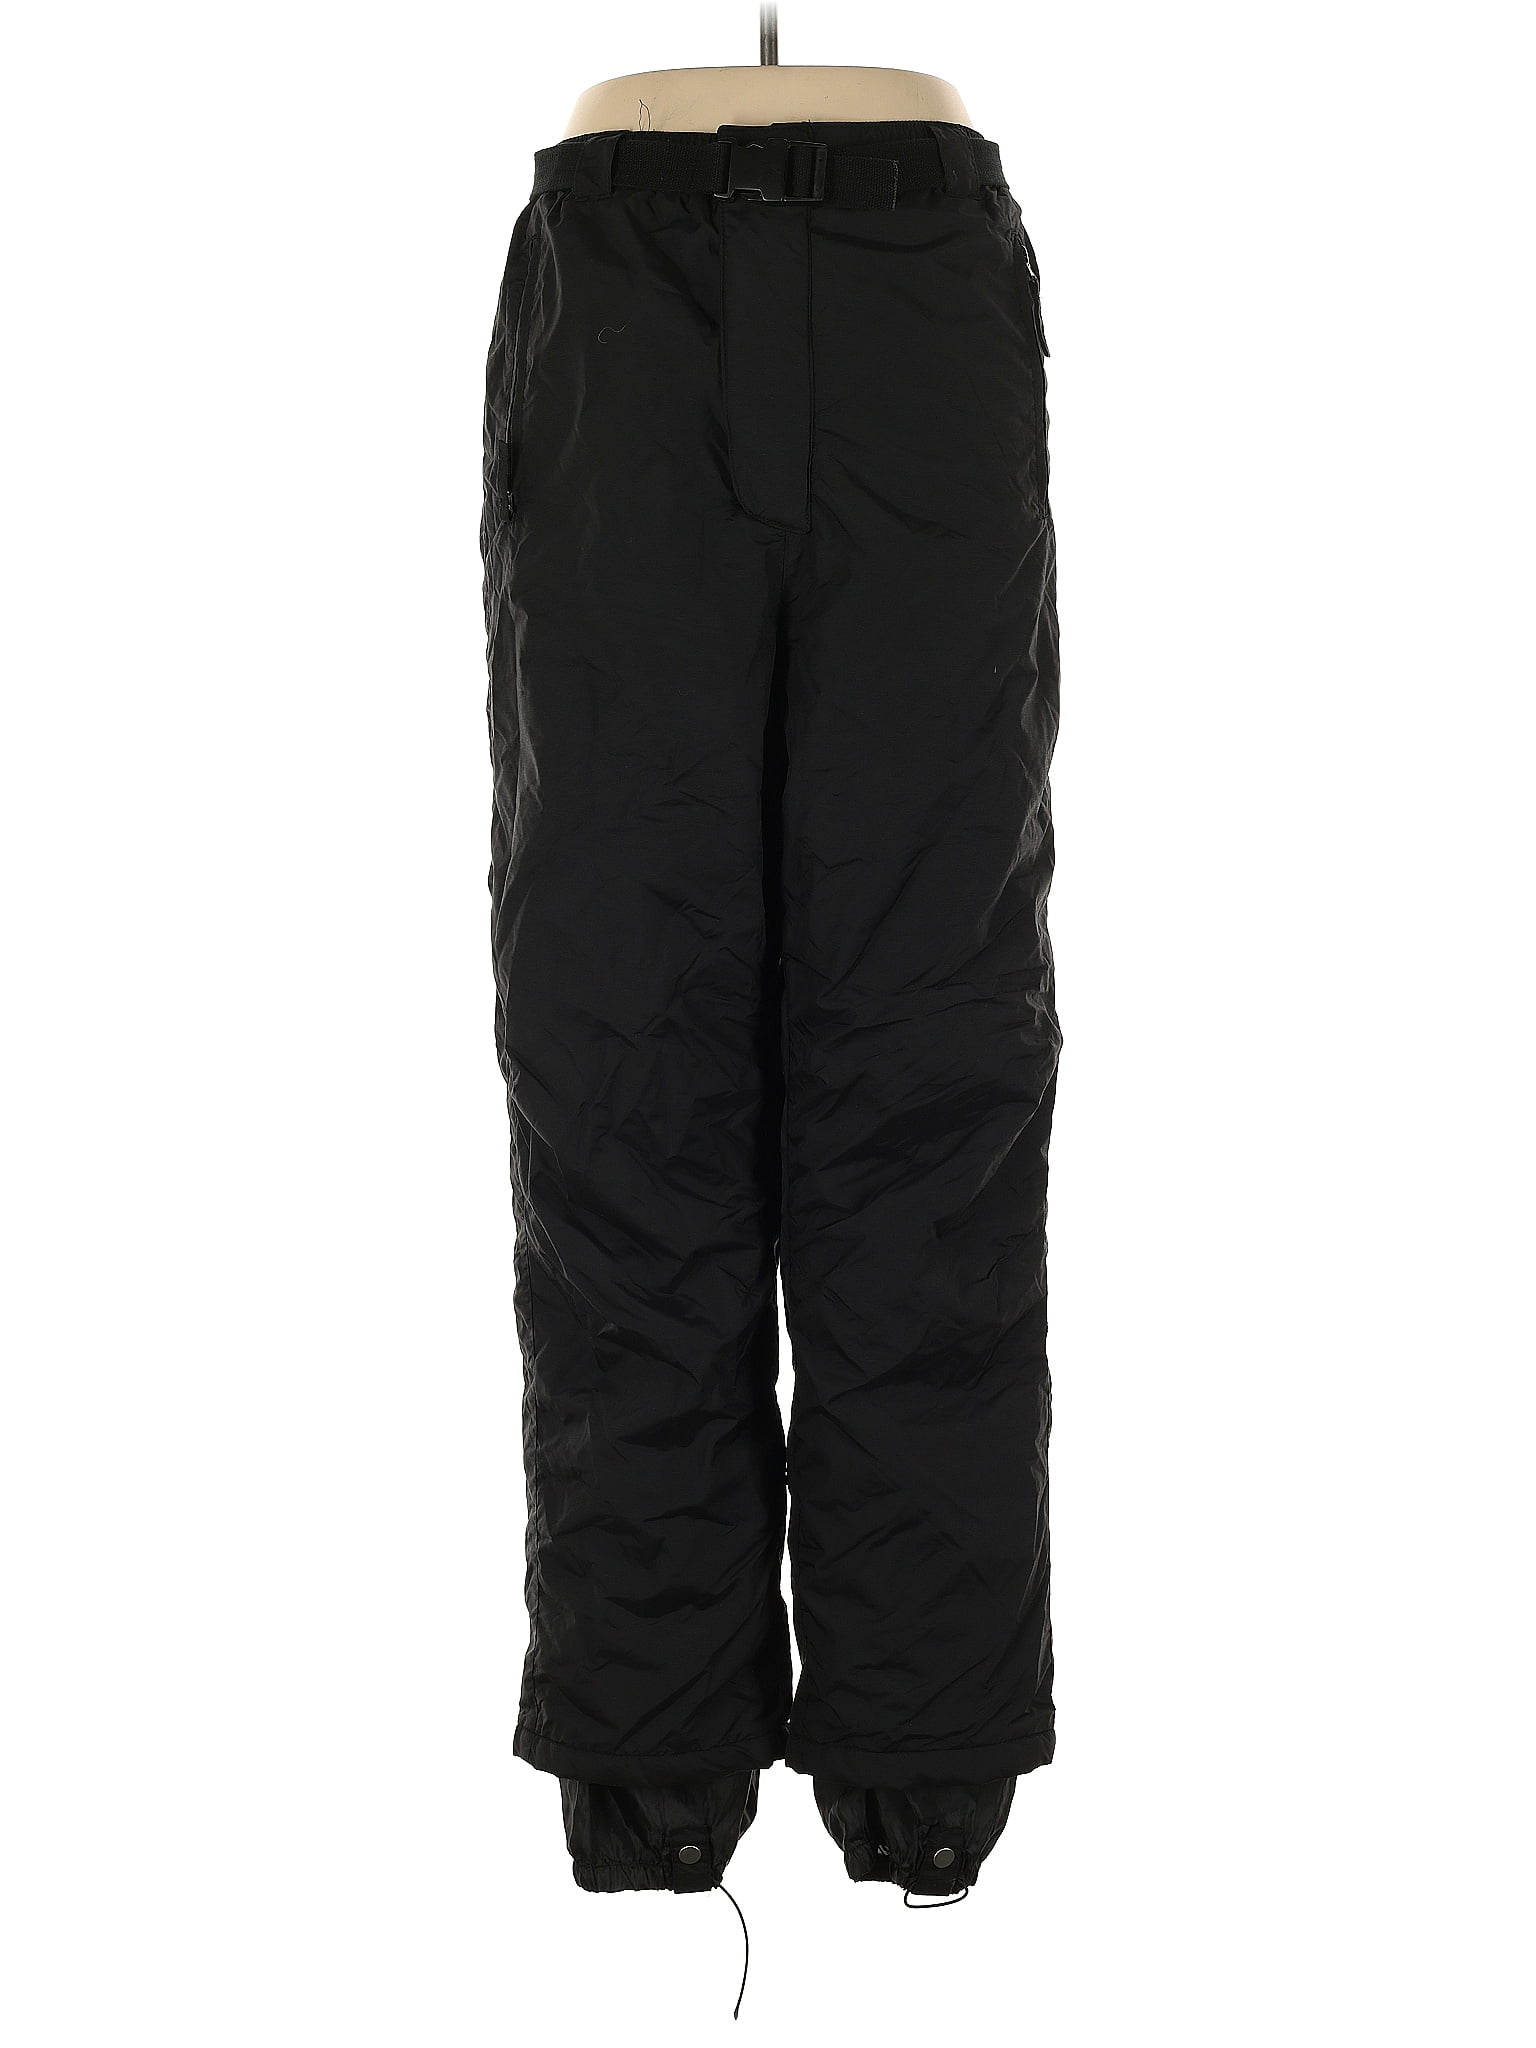 DSG Outerwear - Pants, Climate Control